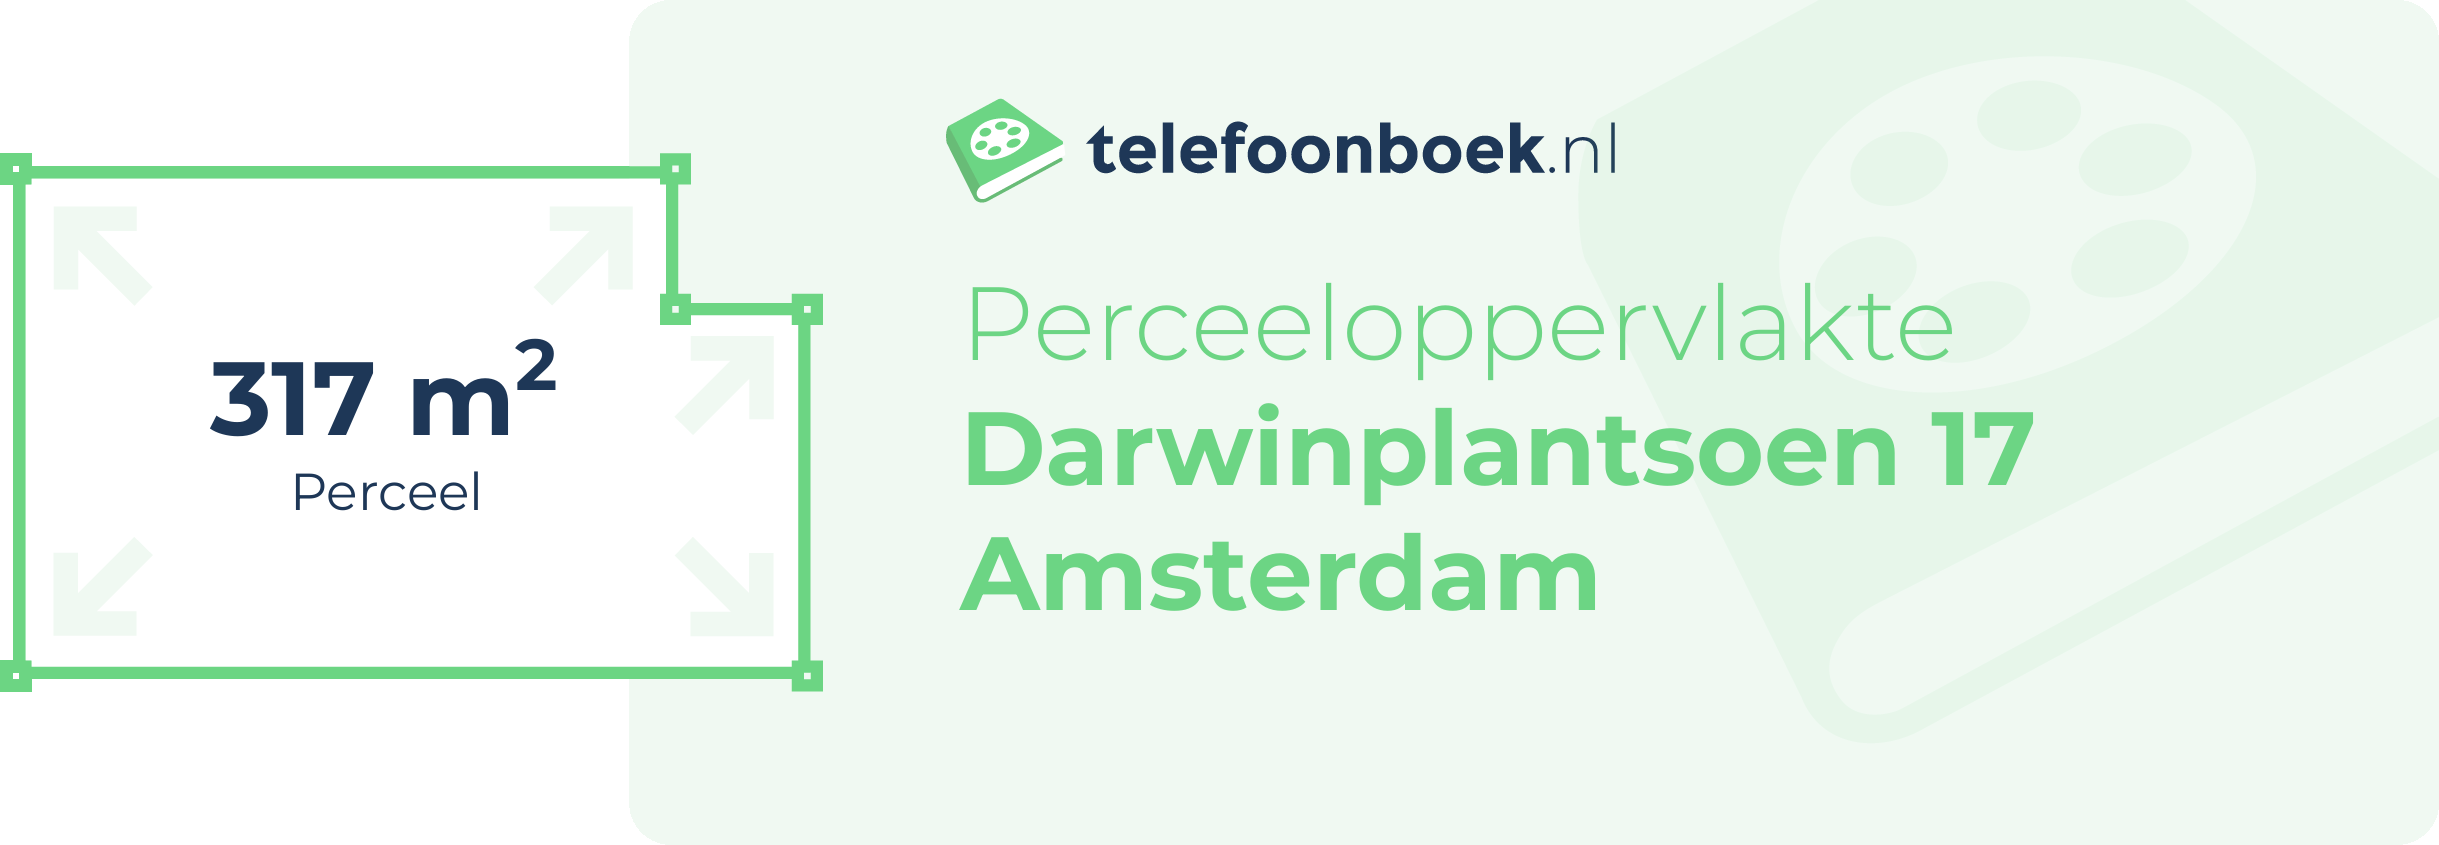 Perceeloppervlakte Darwinplantsoen 17 Amsterdam